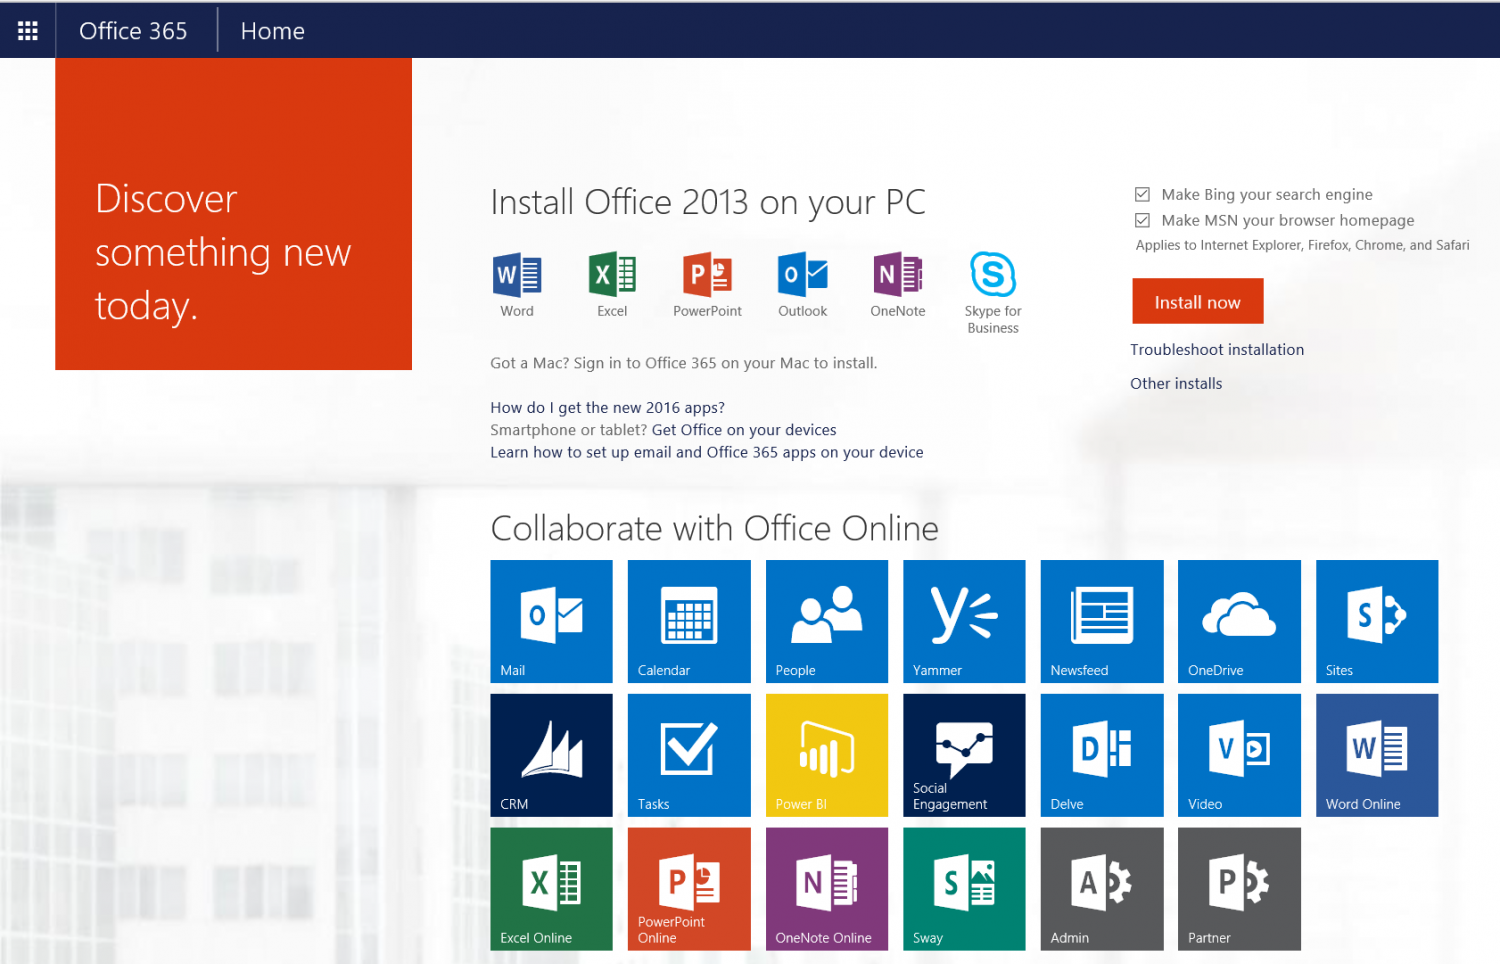 Office 365 Portal - wide 6